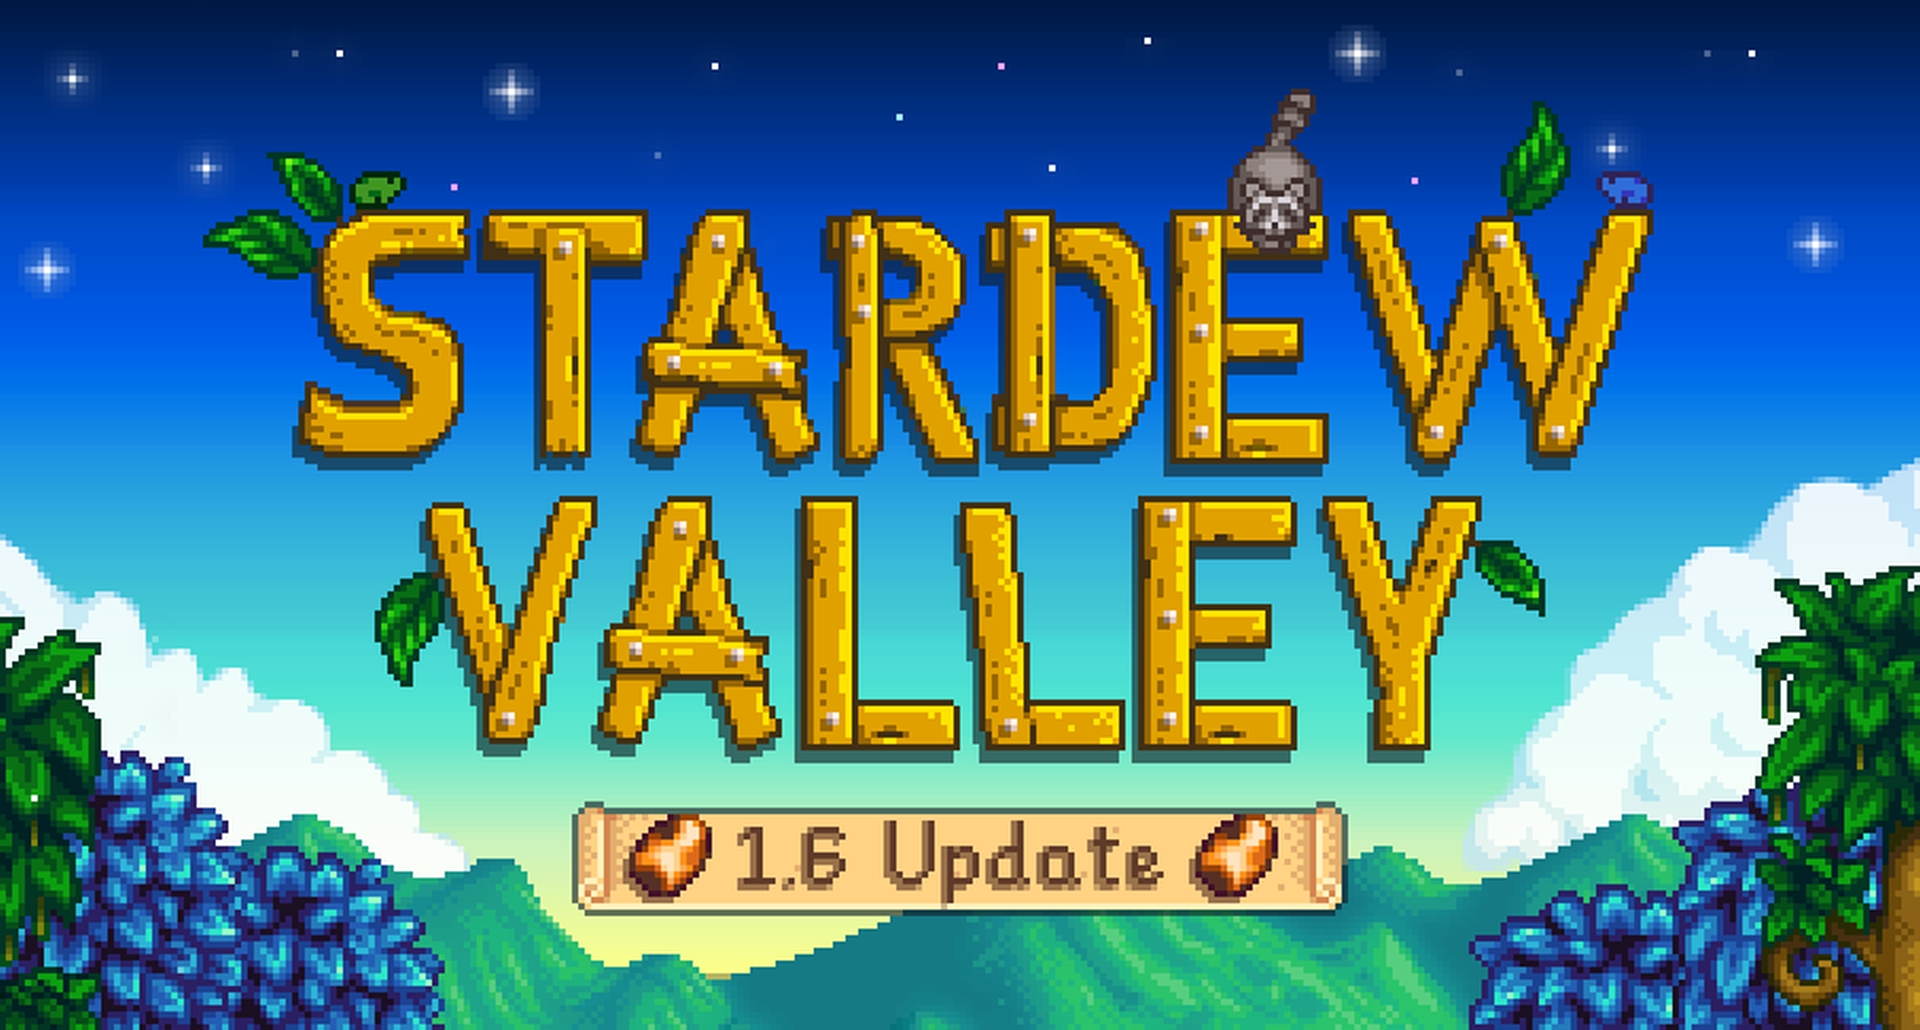 L'aggiornamento 1.6 di Stardew Valley sarà rilasciato il 16 marzo per PC, annuncia lo sviluppatore